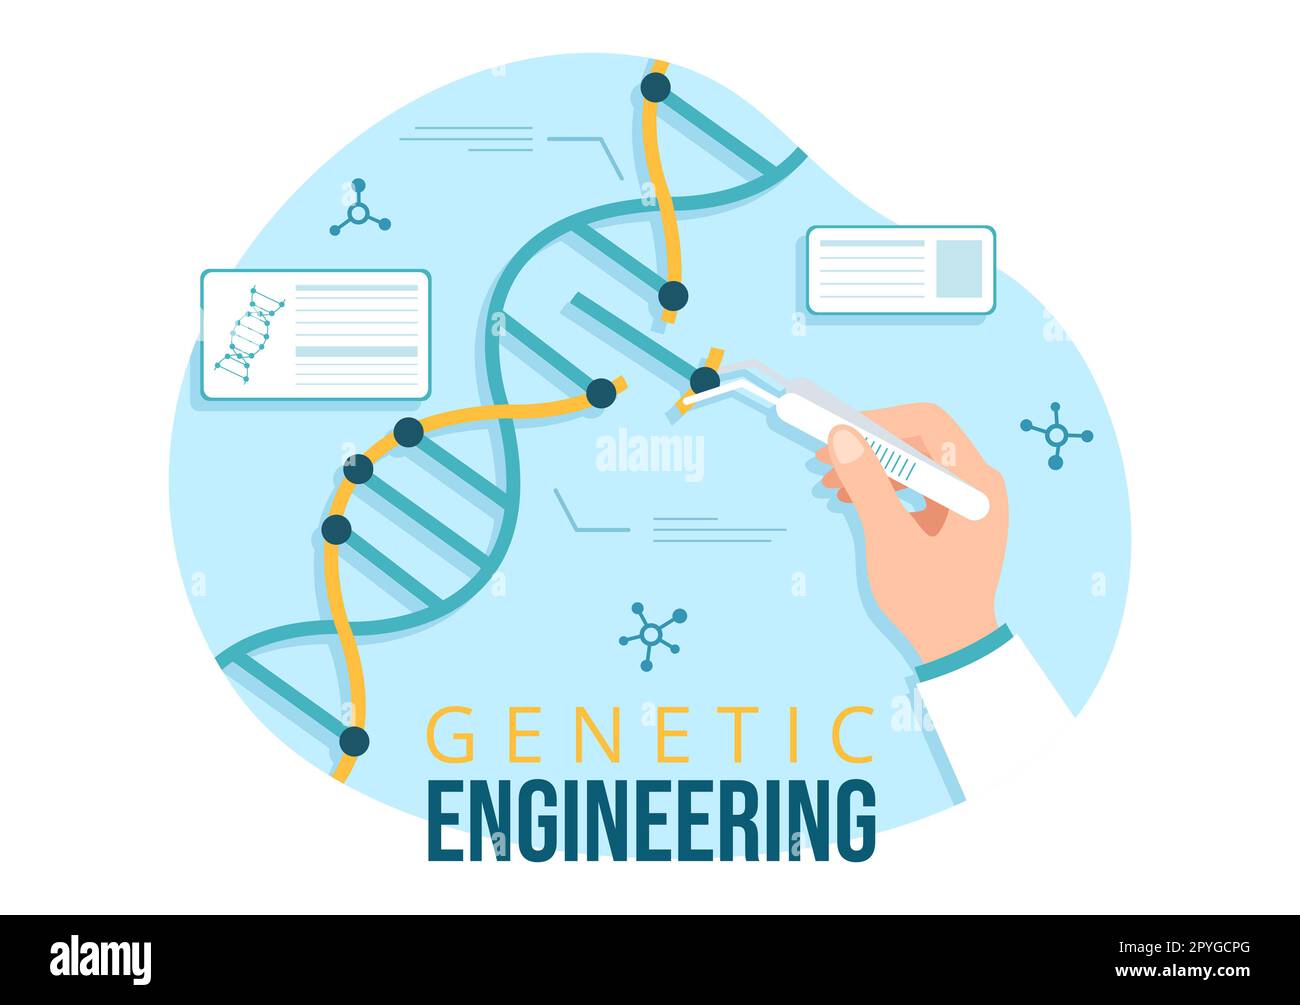 Gentechnik und DNA-Modifikationen Illustration mit Genetics Research oder Experimentwissenschaftlern in Flat Cartoon Hand Drawn Templates Stockfoto